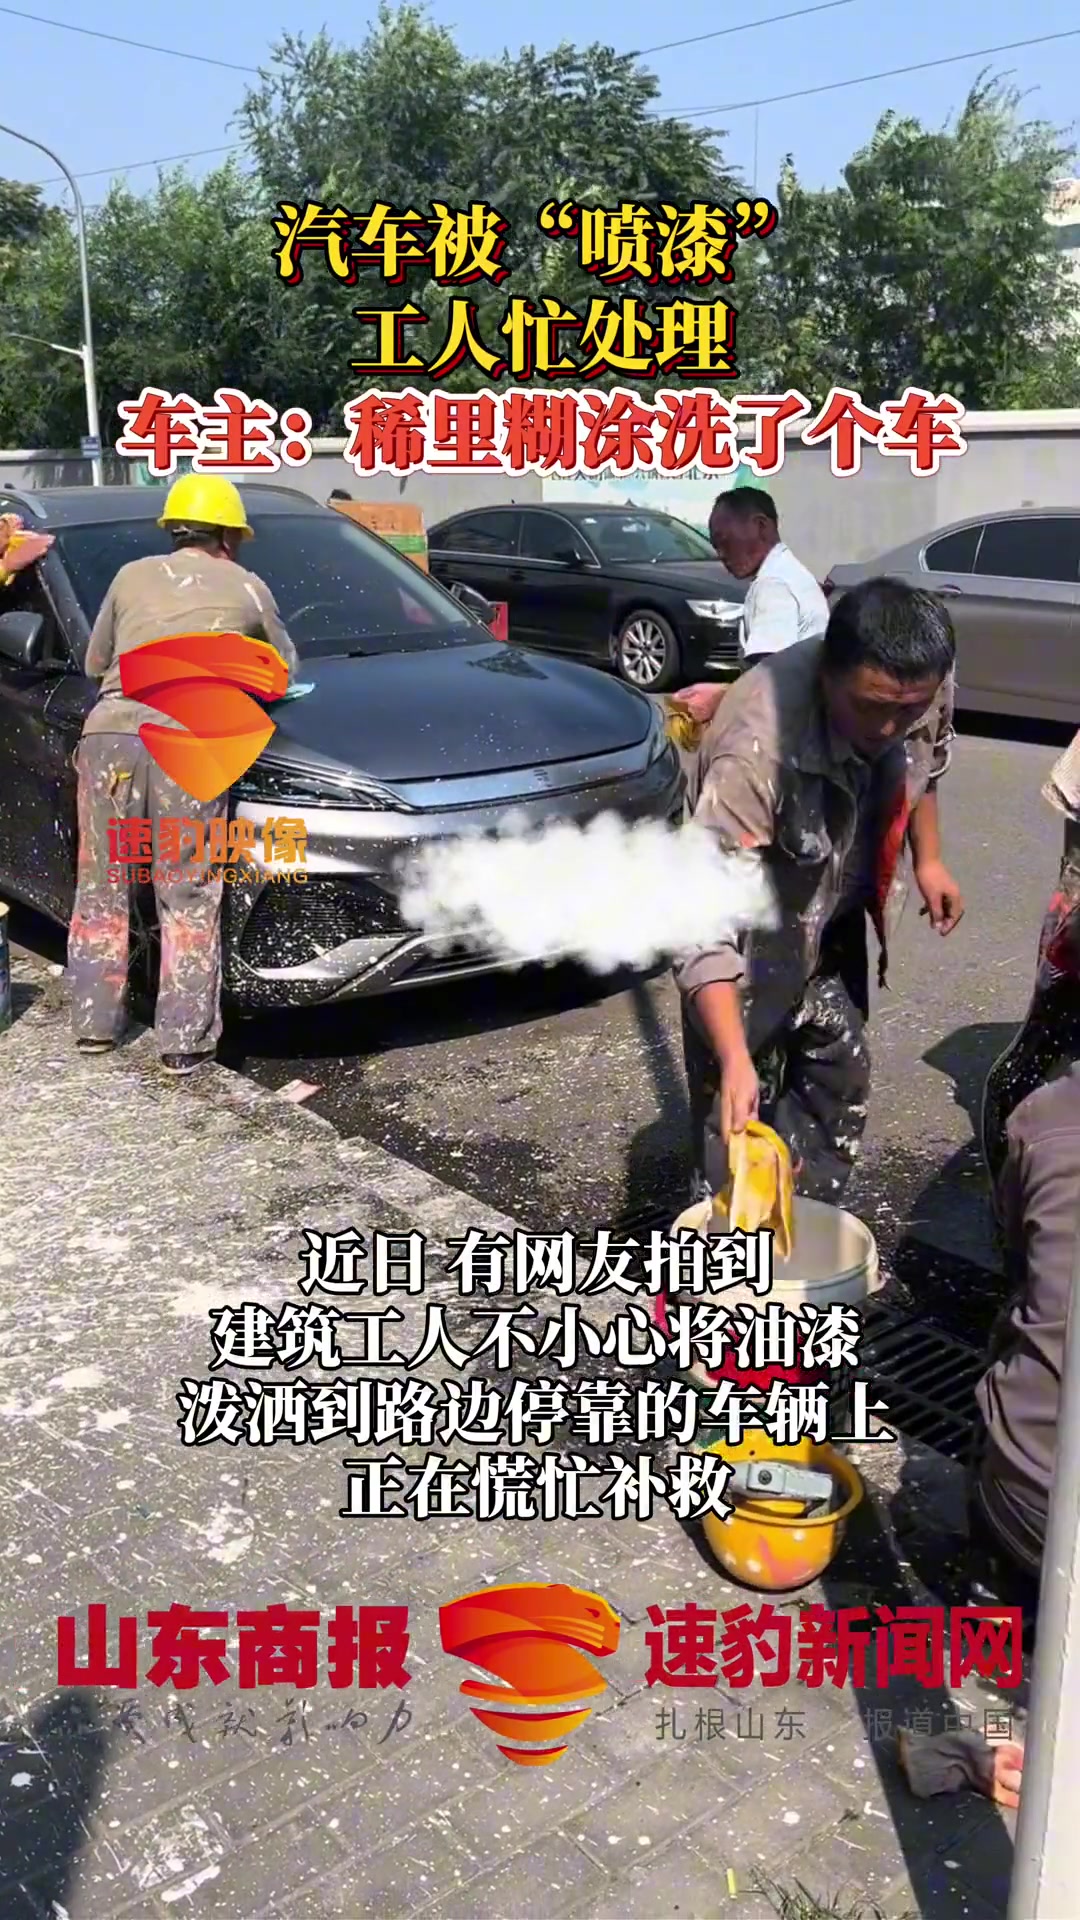 汽车被“喷漆” 工人忙处理 车主：稀里糊涂洗了个车